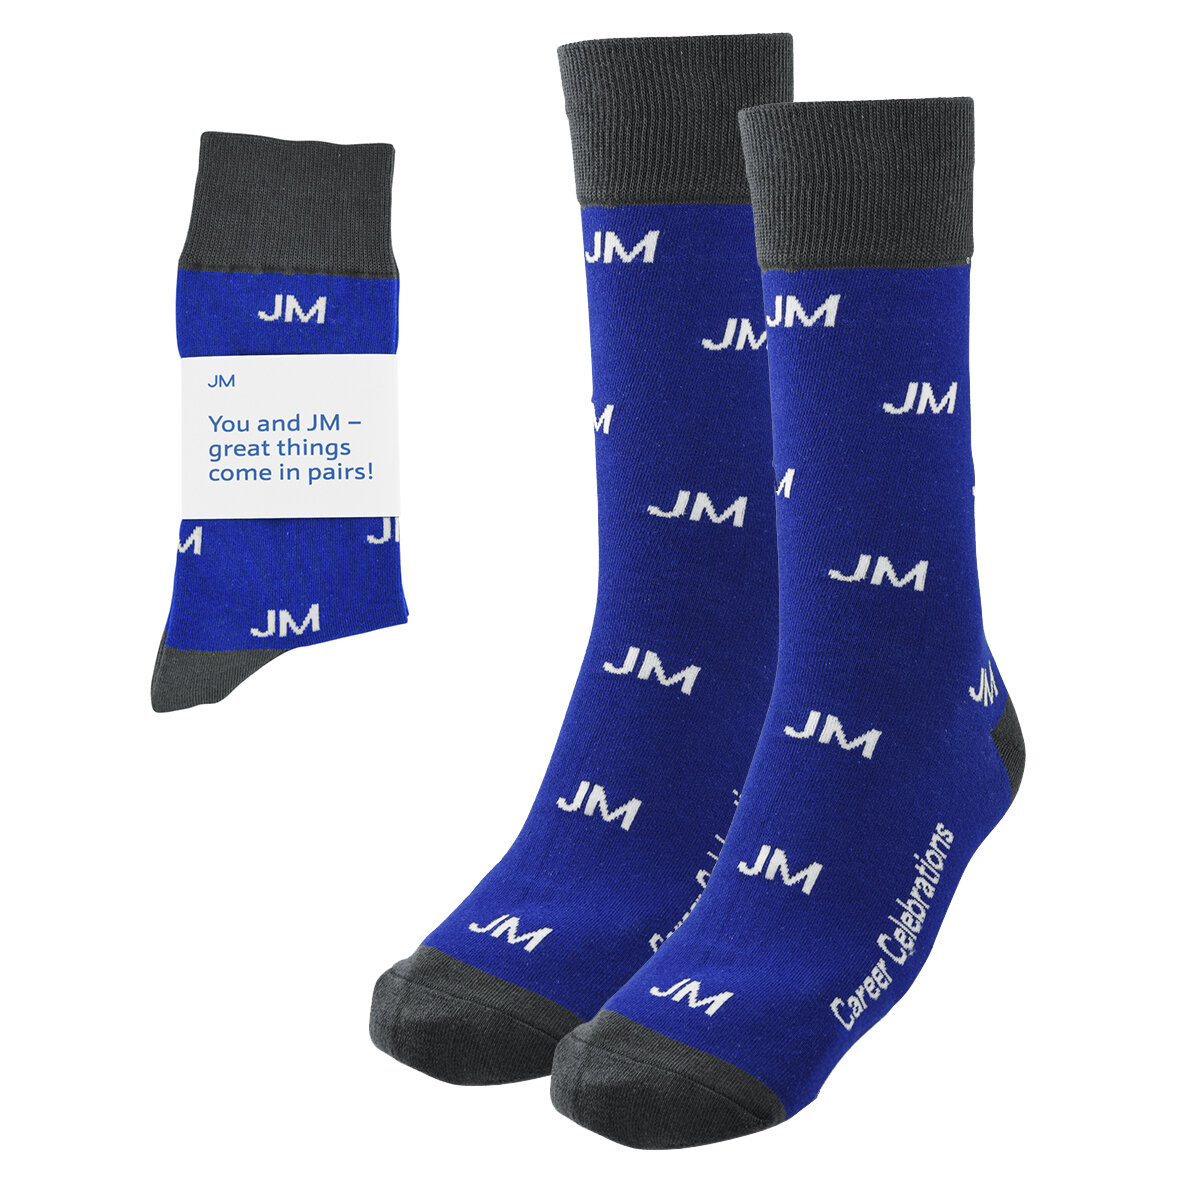 JM Socks-1.jpg